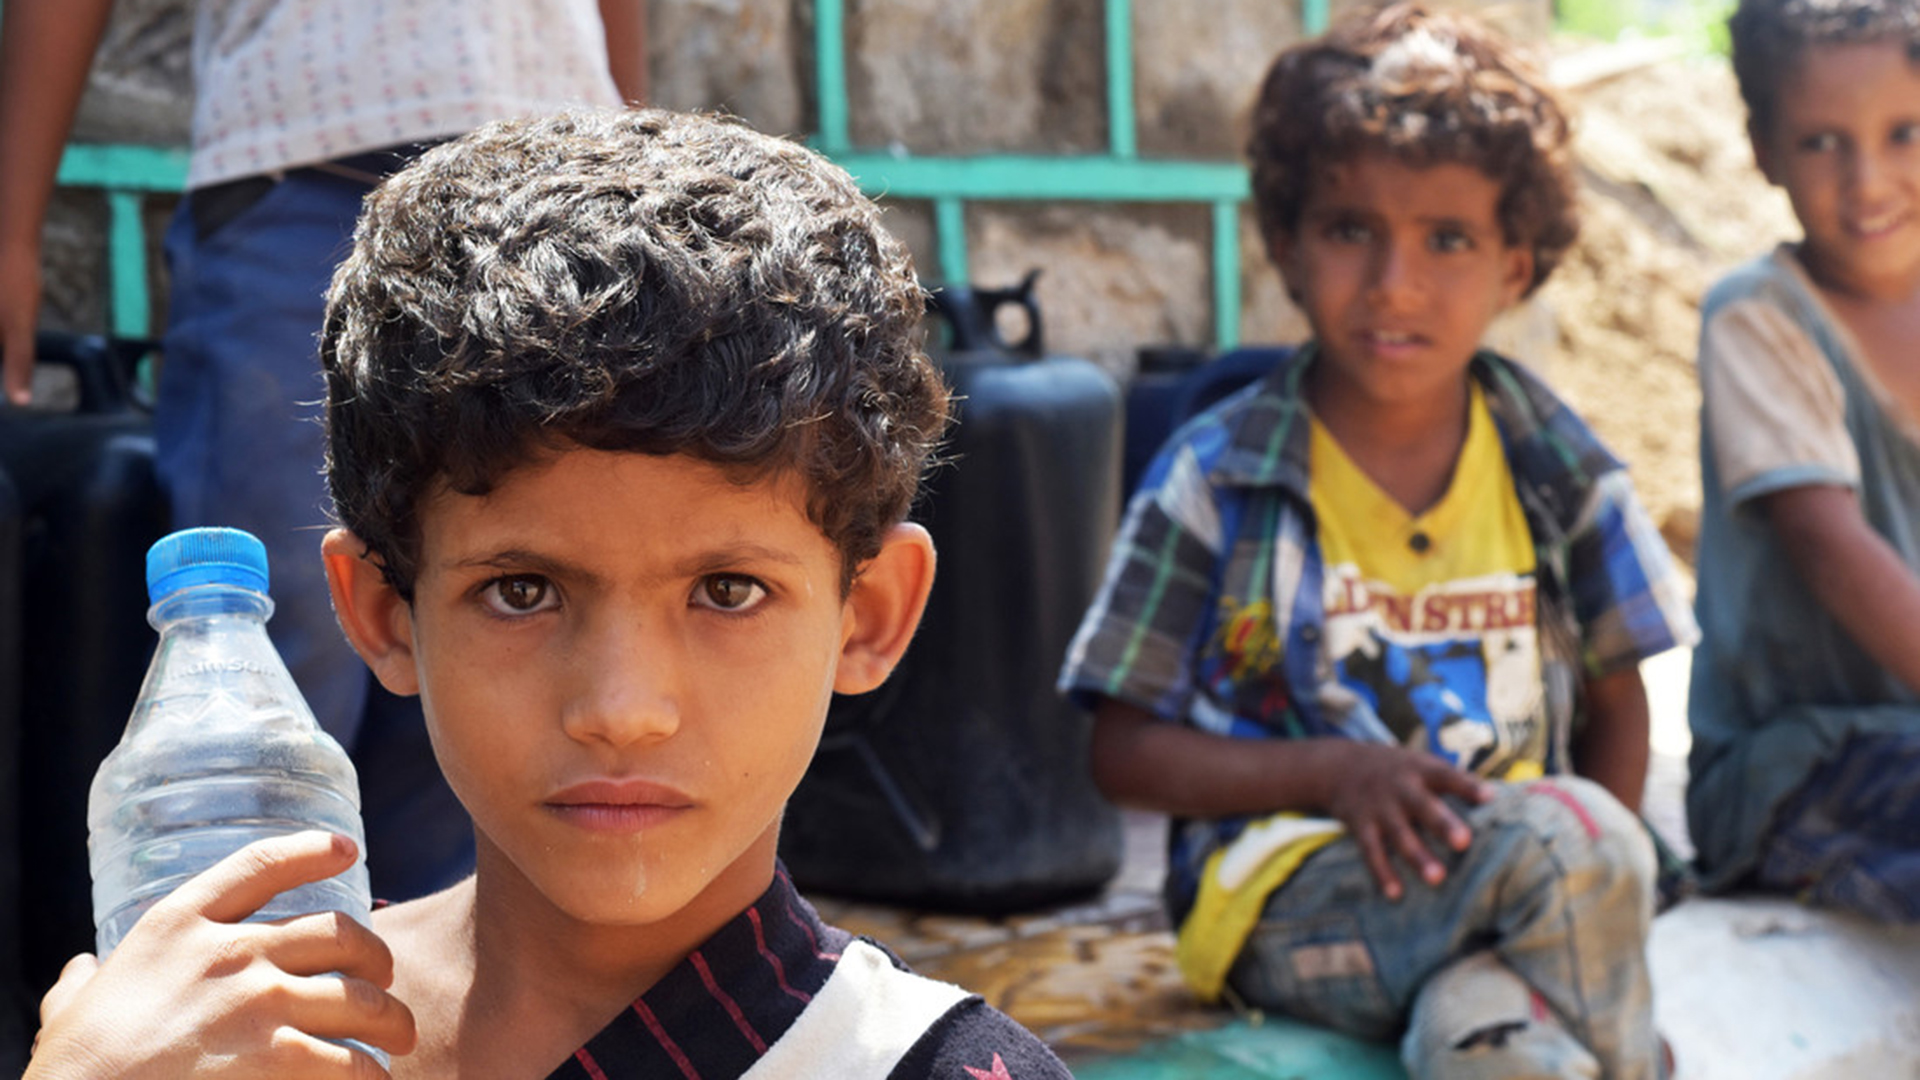 Kinder im Jemen. | Foto: Aktion Deutschland Hilft e.V./Aktion Deutschland Hilft e.V./obs